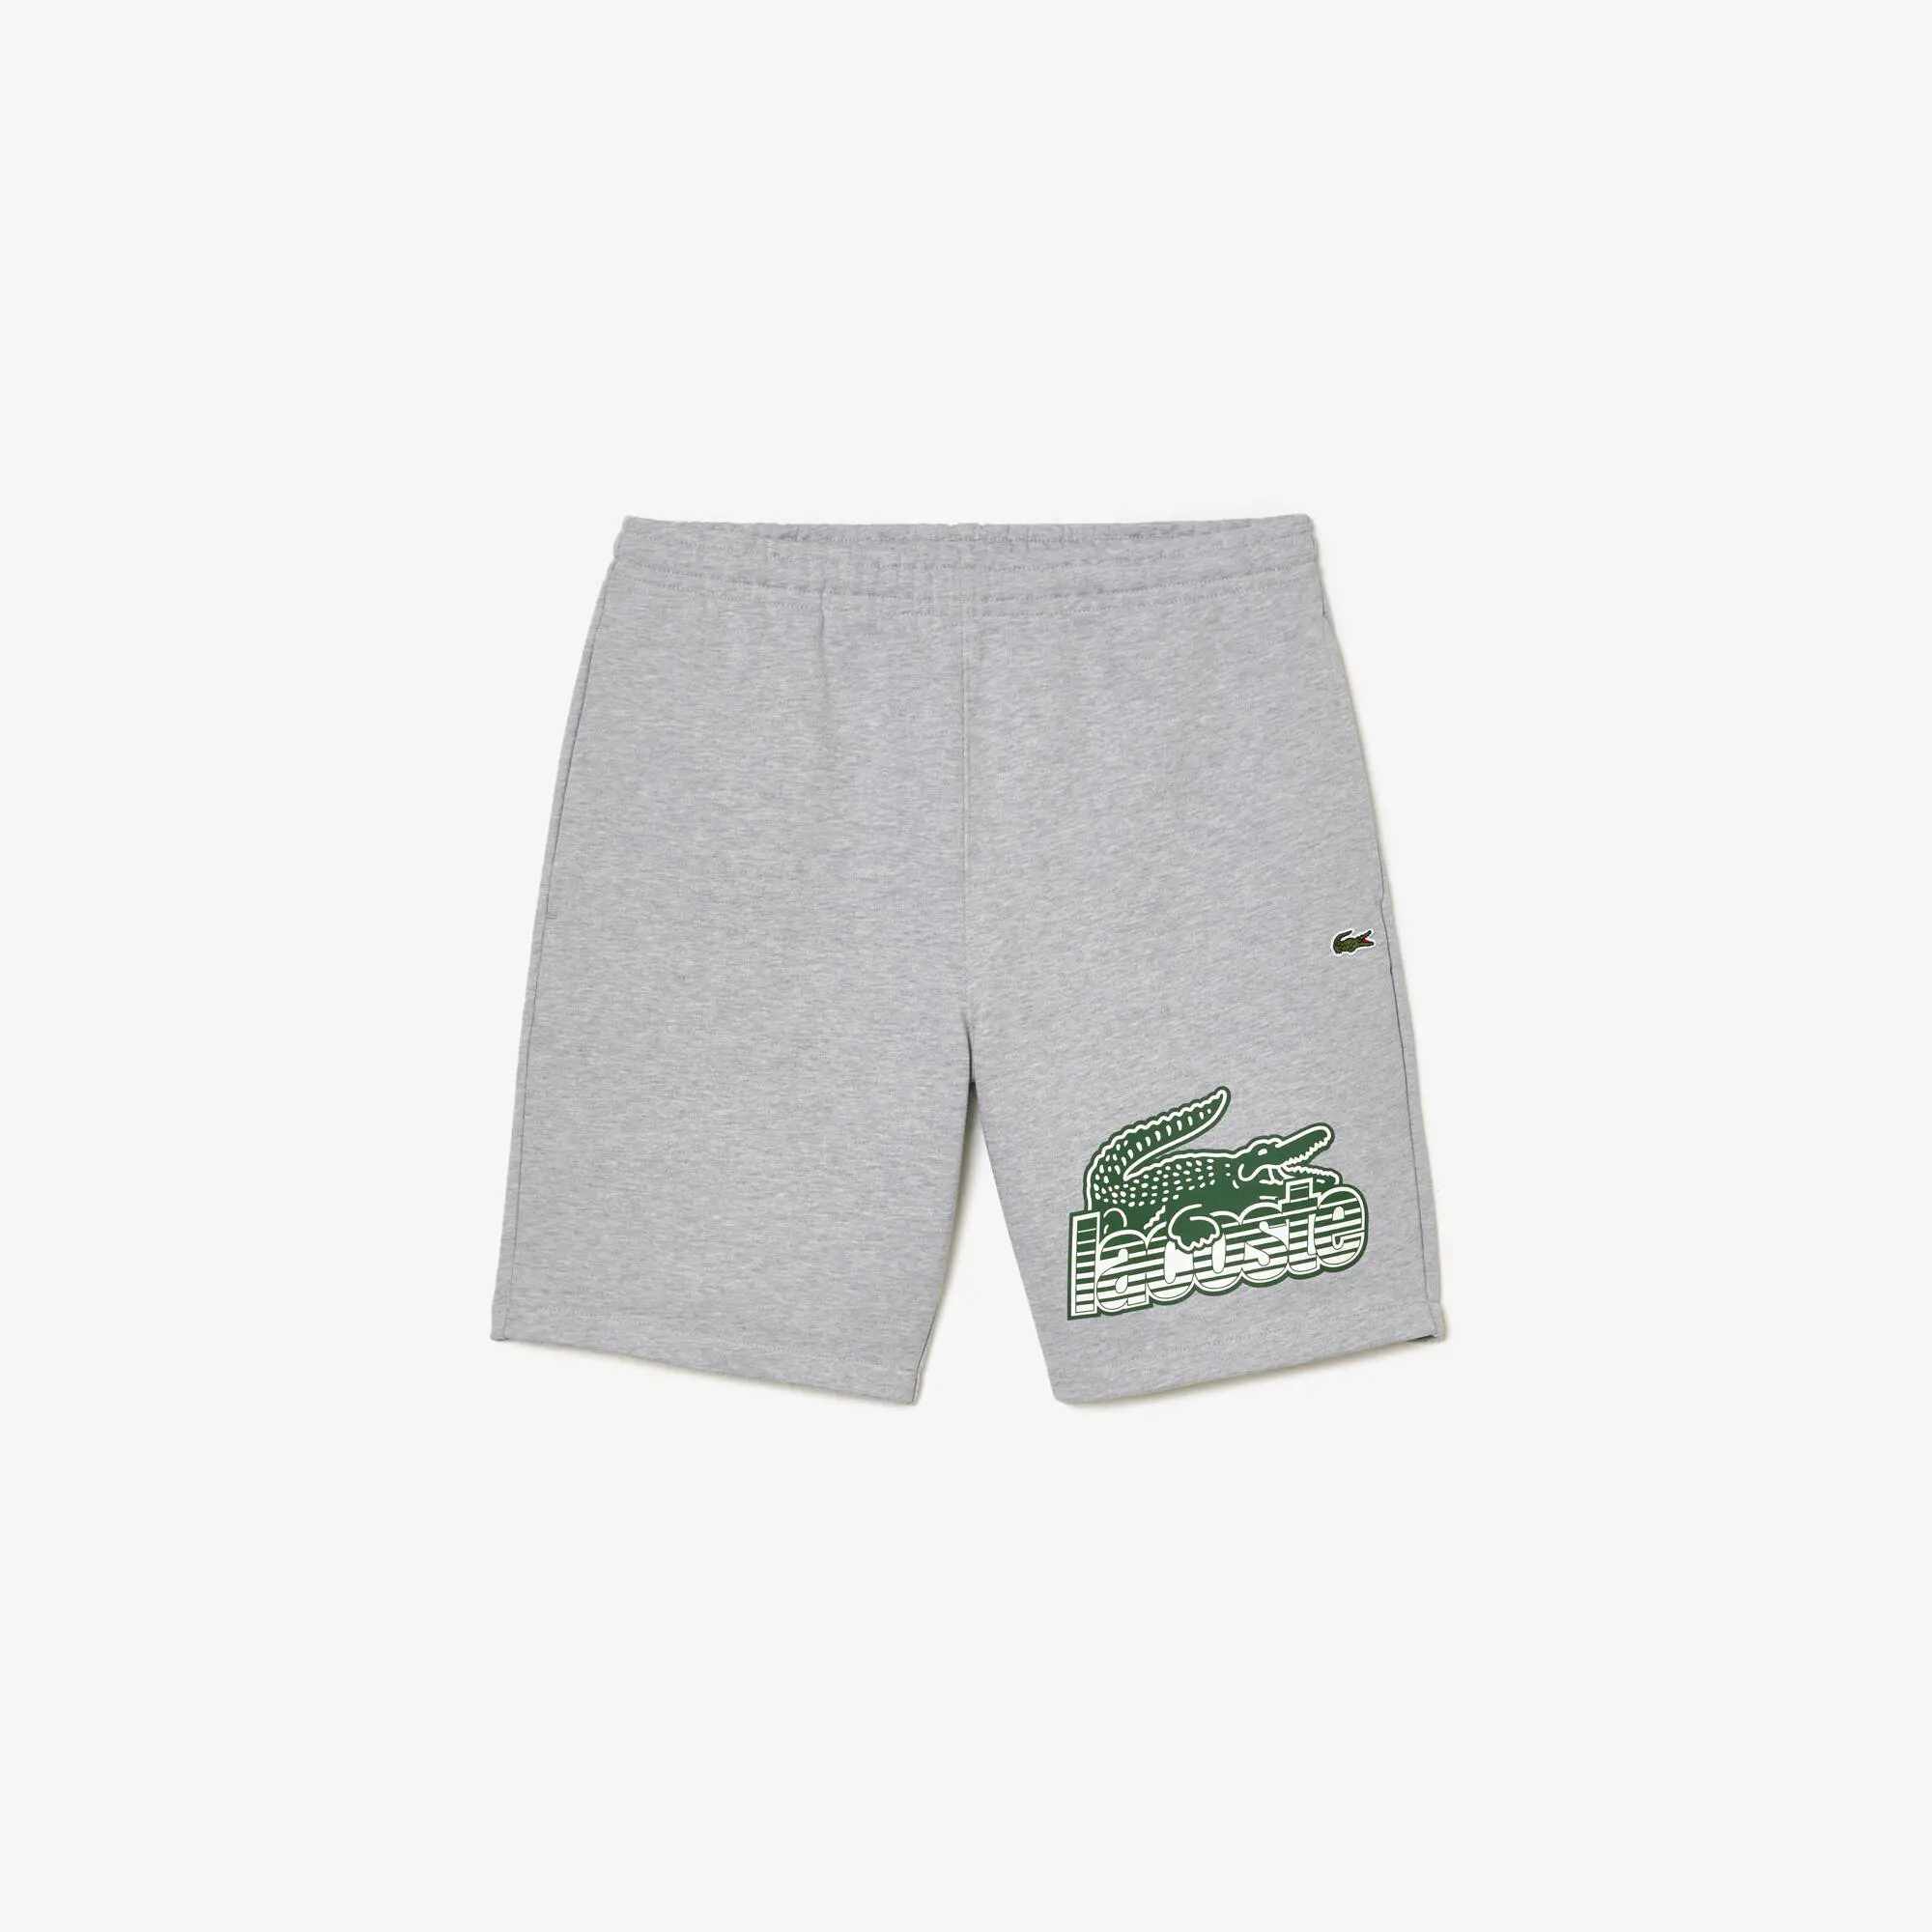 Lacoste Men’s Lacoste Unbrushed Cotton Fleece Shorts. 2